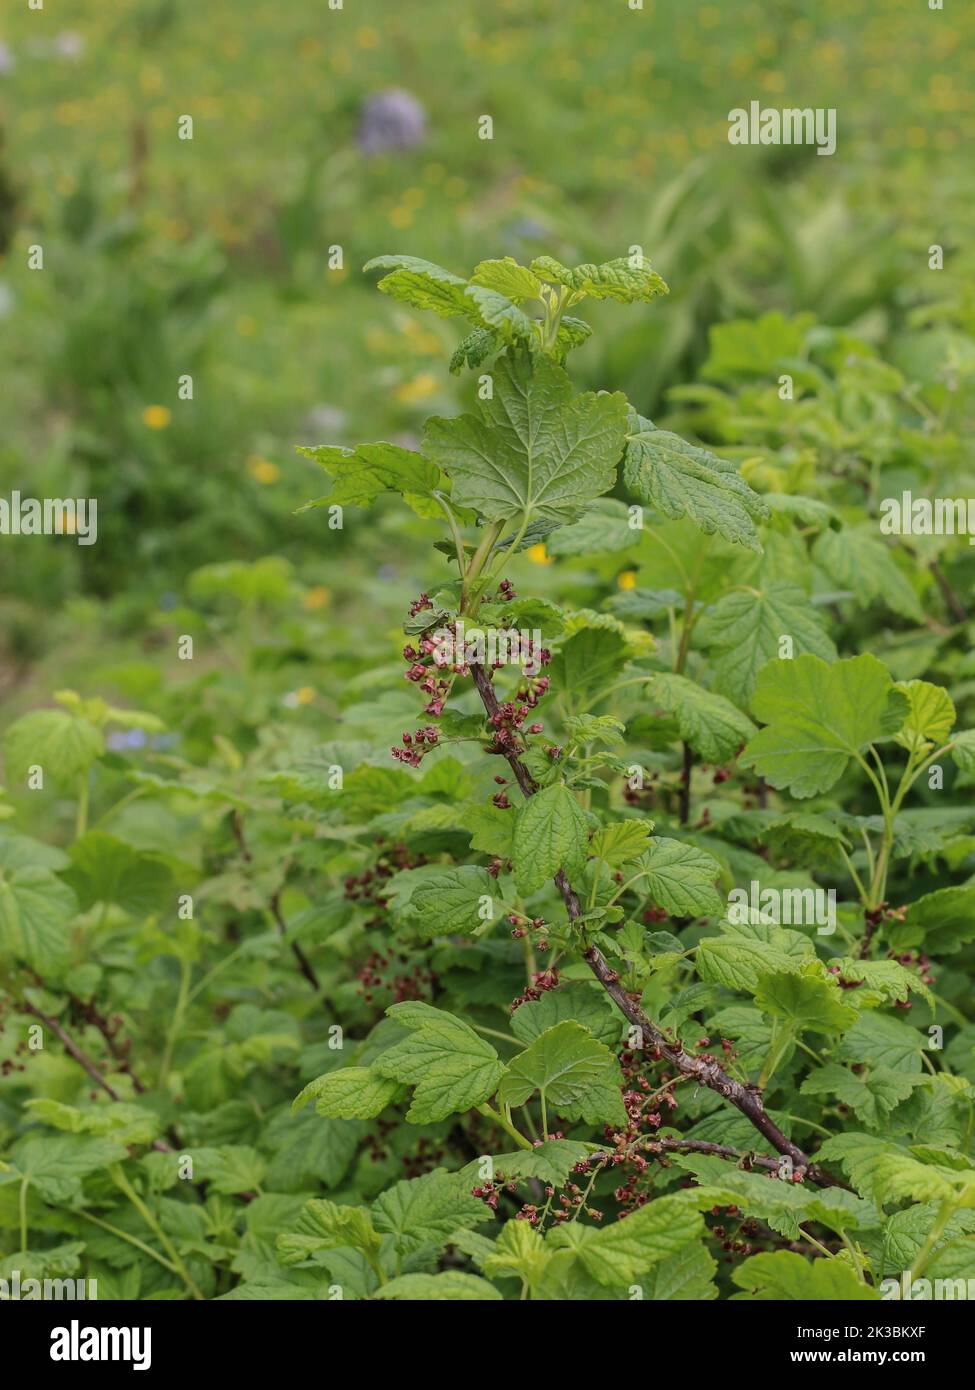 Die felsige rote Johannisbeere (lateinischer Name: Ribes petraeum) mit rötlichen Blüten auf der Mokra Gora im Südwesten Serbiens bei Tutin Stockfoto